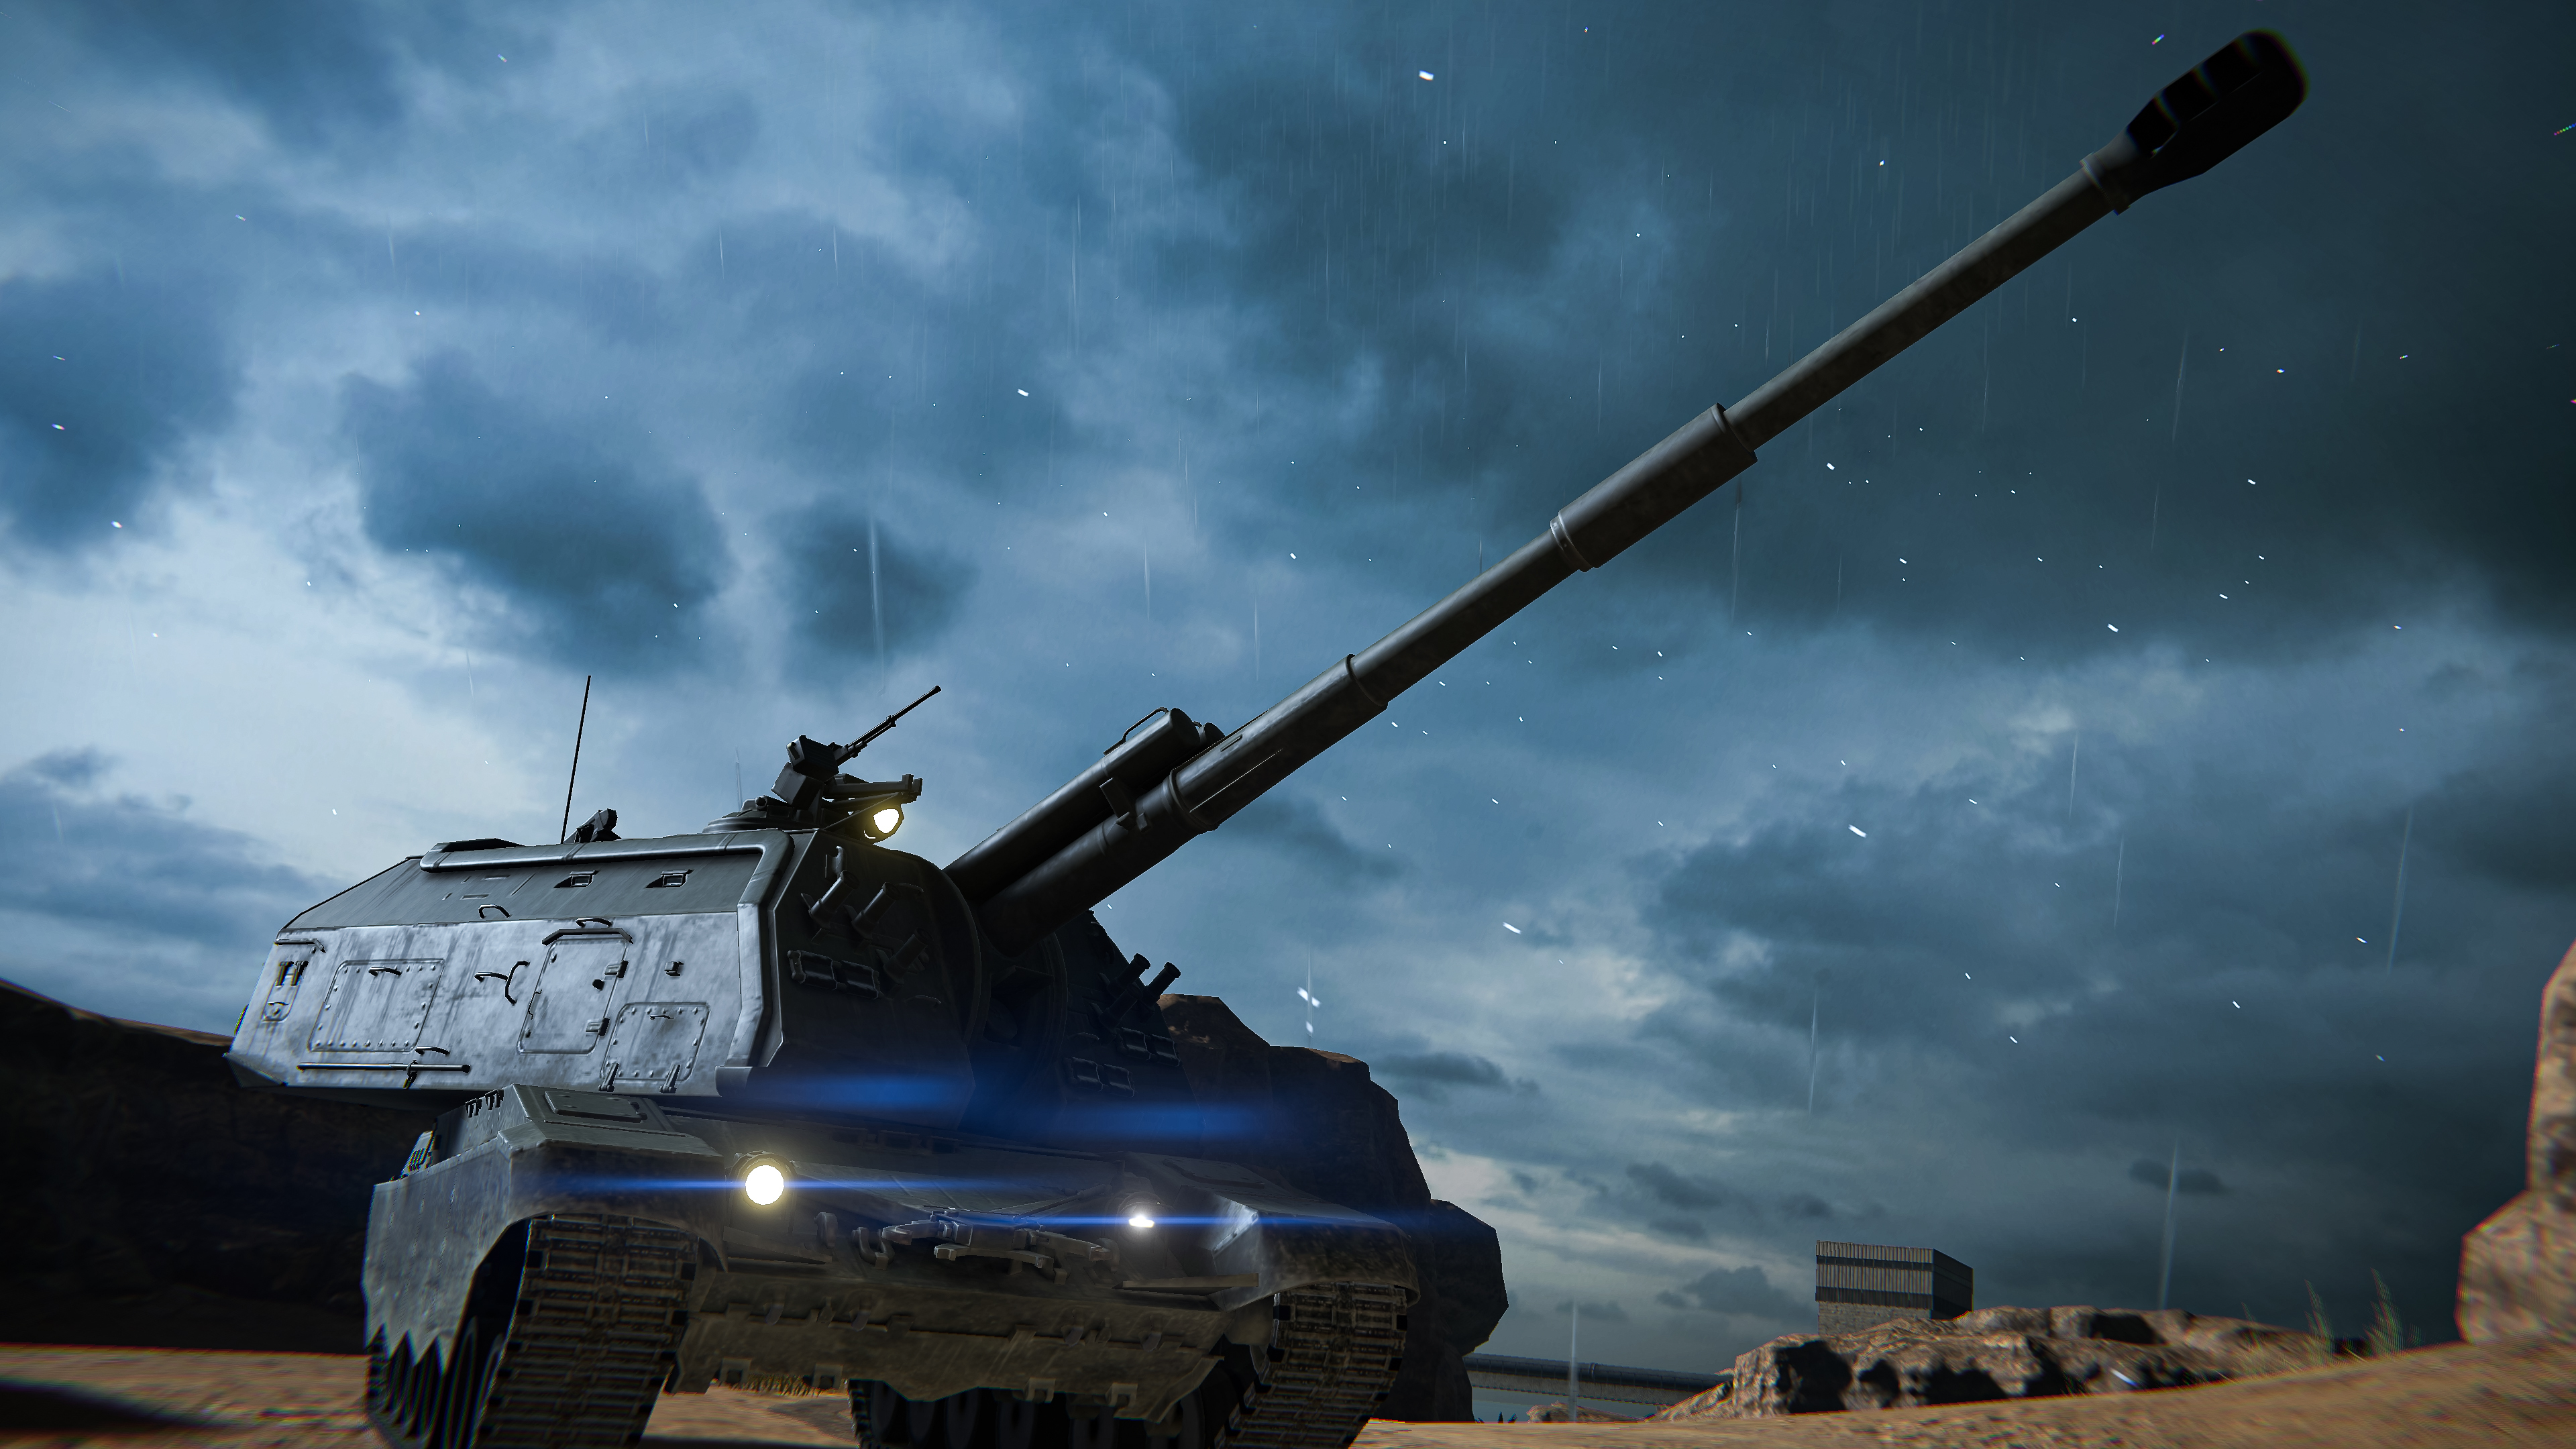 来自谢尔盖:

这是坦克模式夜战_图2